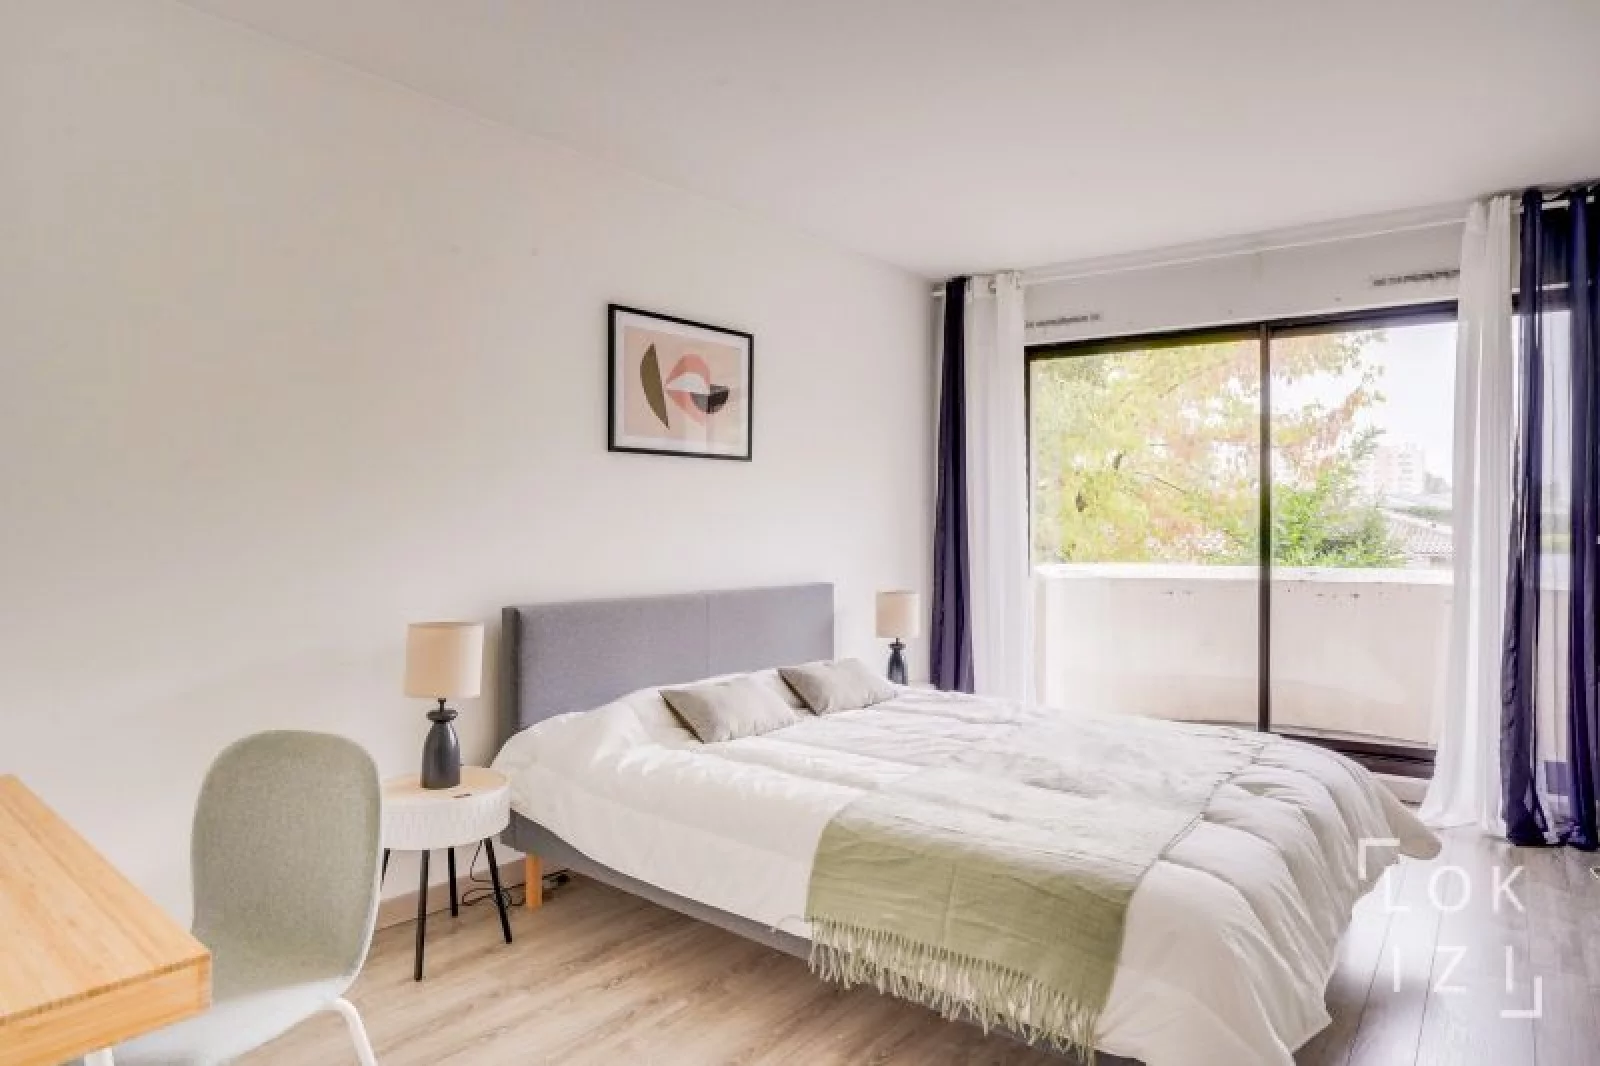 Location appartement meublé 2 pièces 56m²  (Bordeaux - Caudéran)